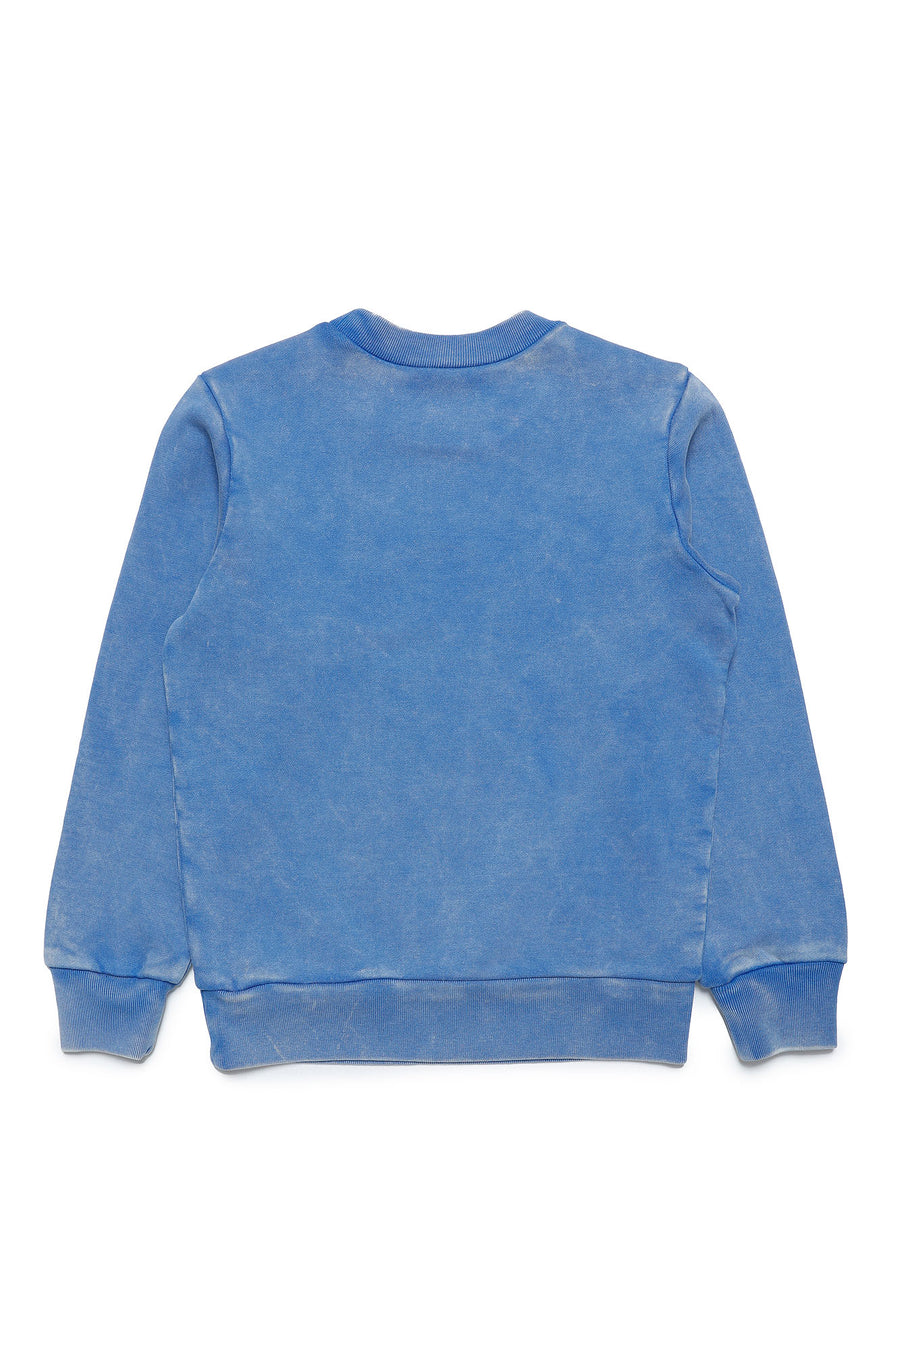 Washed Blue Sweatshirt By N21